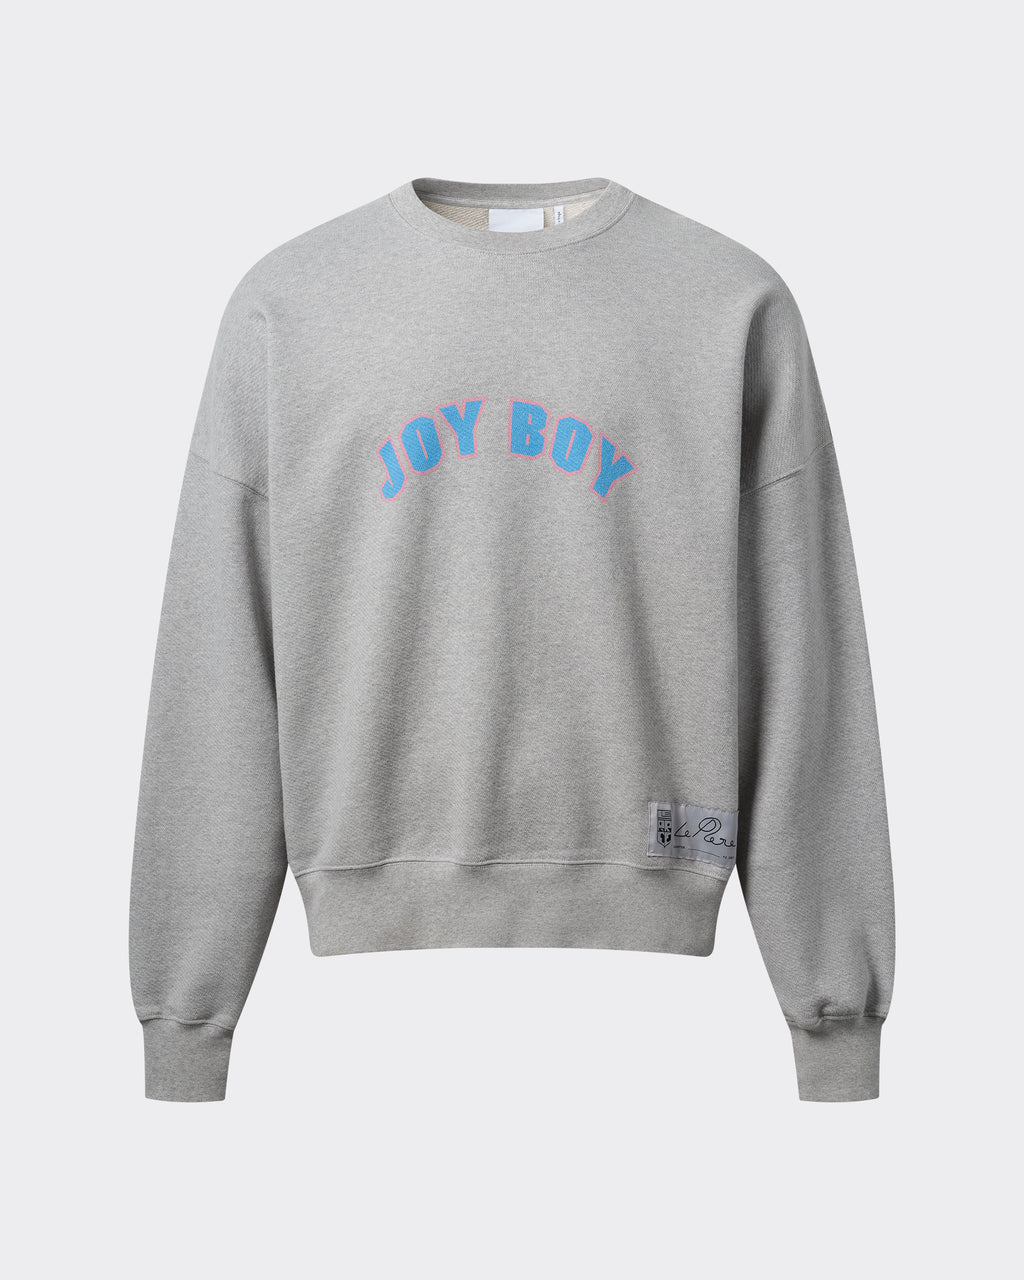 le PÈRE Joy Boy Sweatshirt - Front